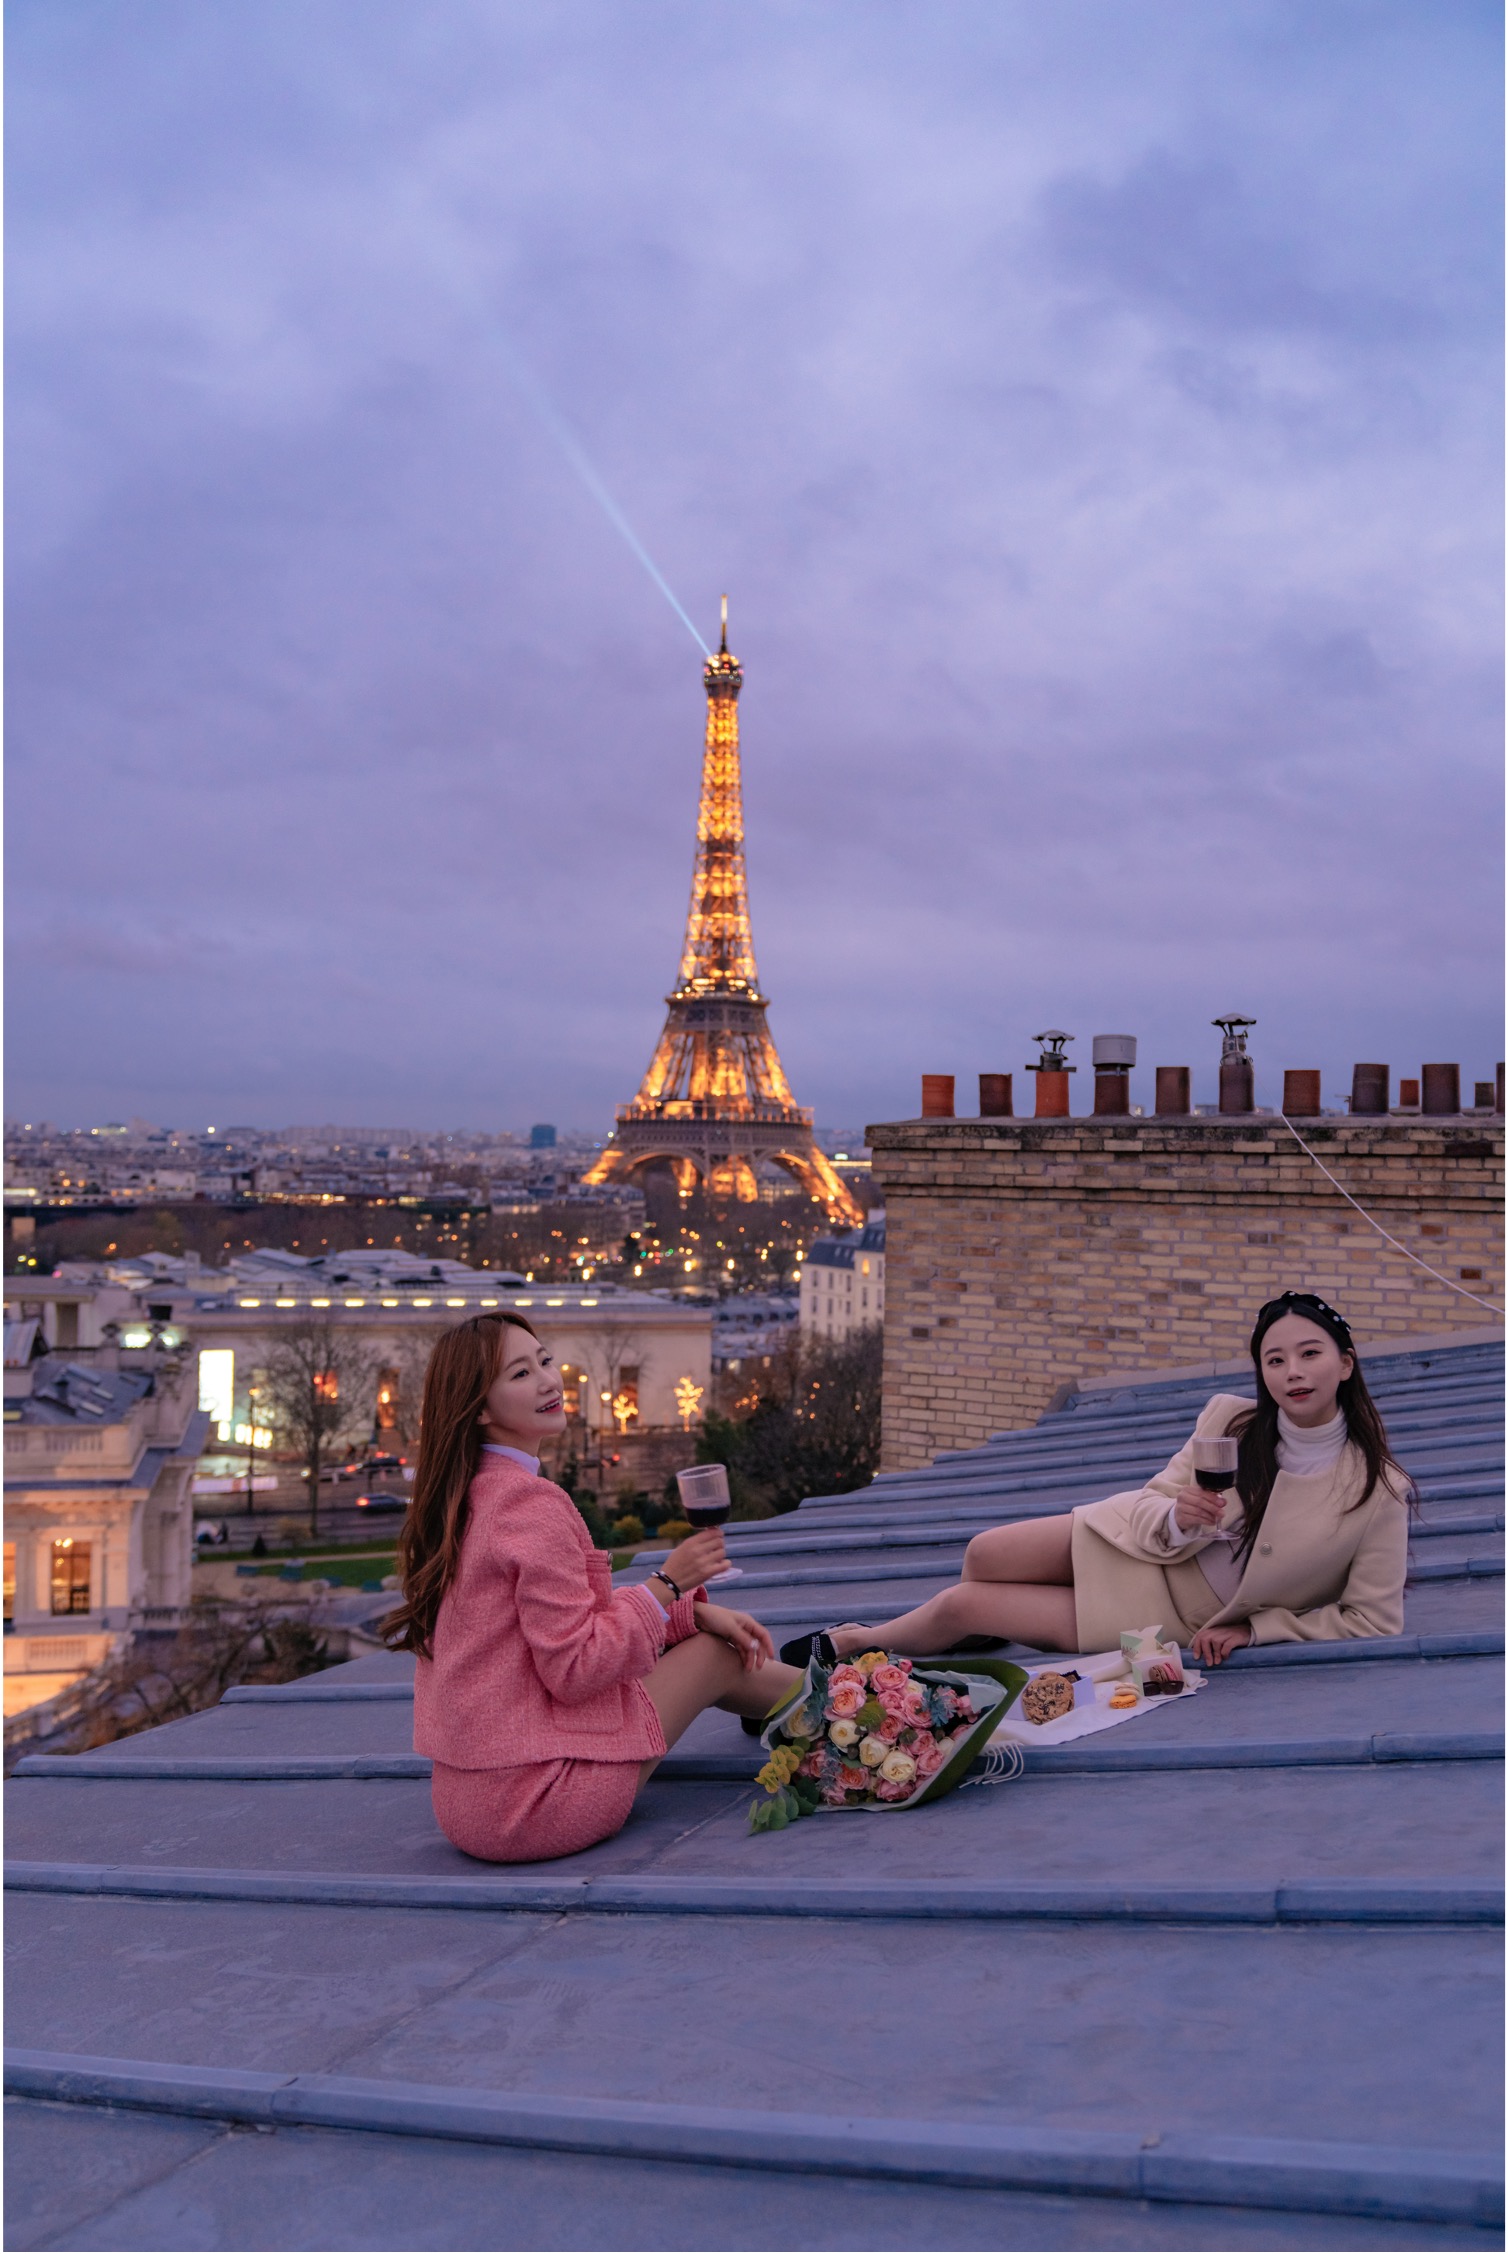 에펠탑 전망 인물 사진